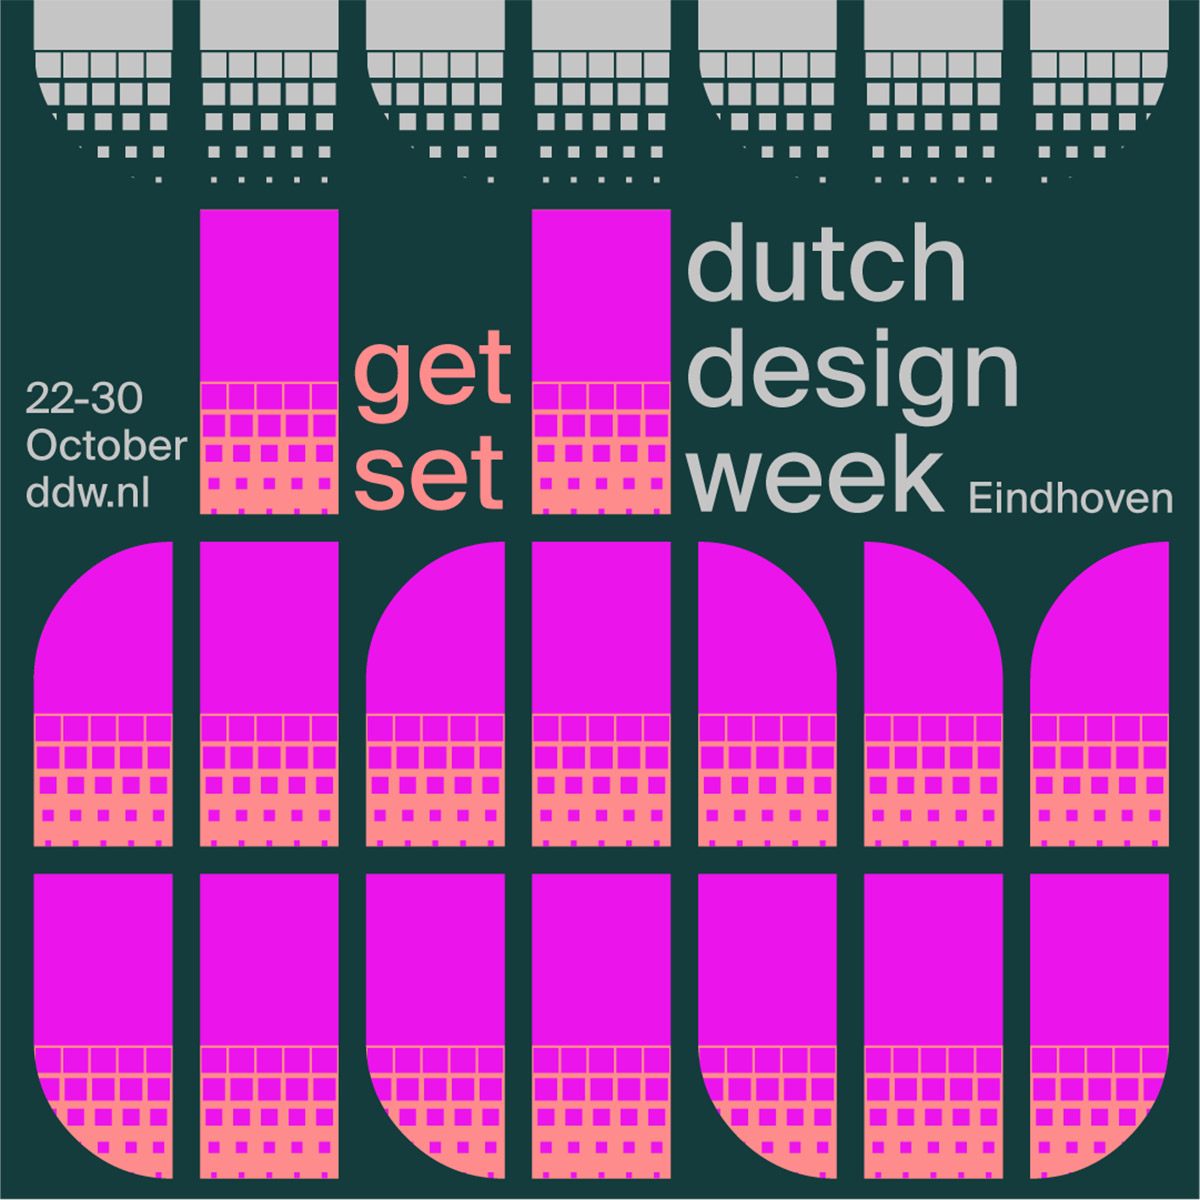 The week in design - Design Week